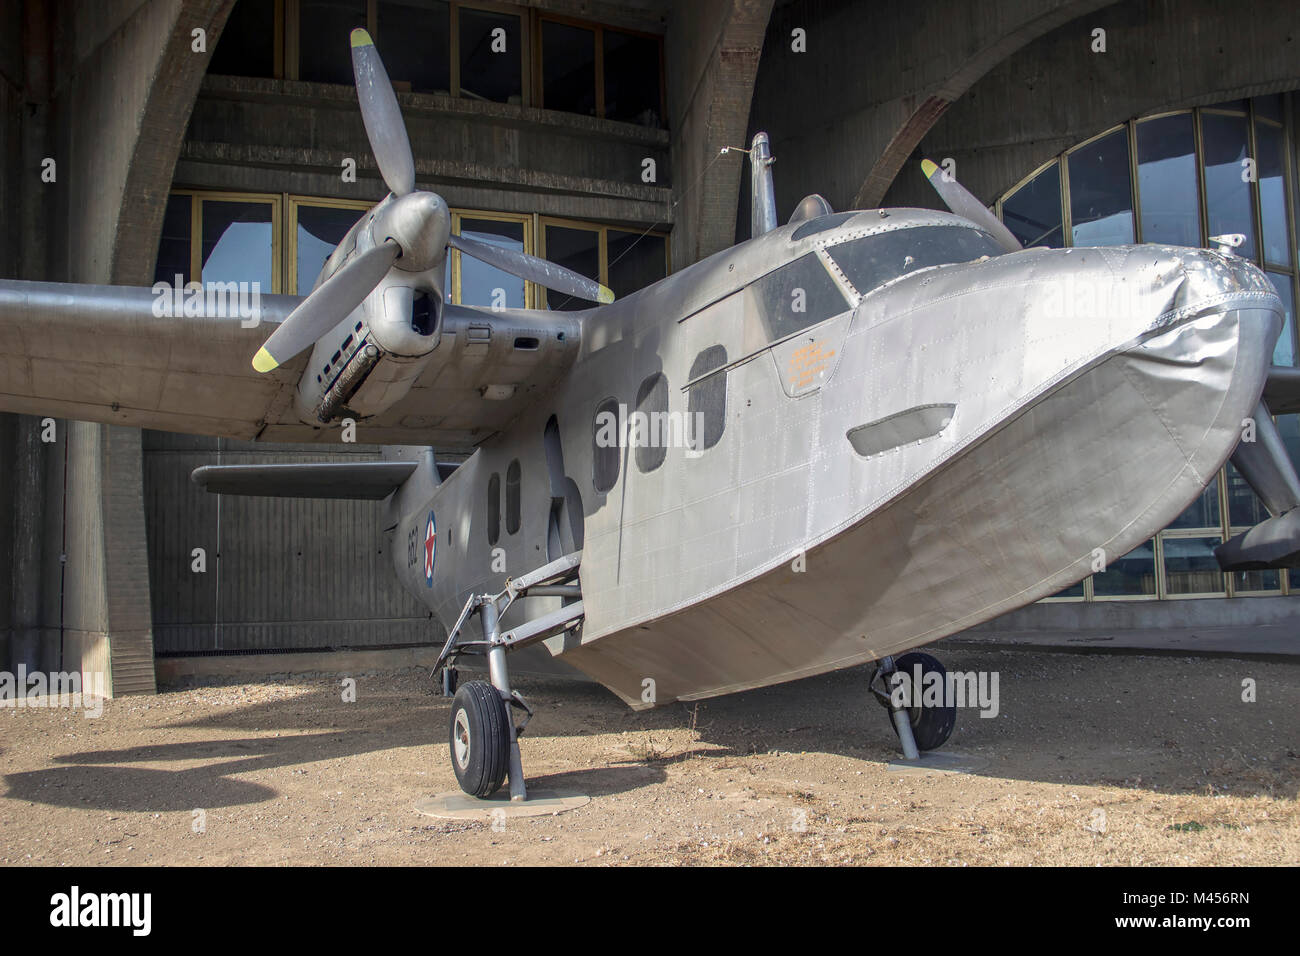 BELGRADE, SERBIE - Court-SA.6 lumière Sealand bimoteur amphibie présenté d'aéronefs sur la cour de la Musée de l'Aviation de Belgrade Banque D'Images